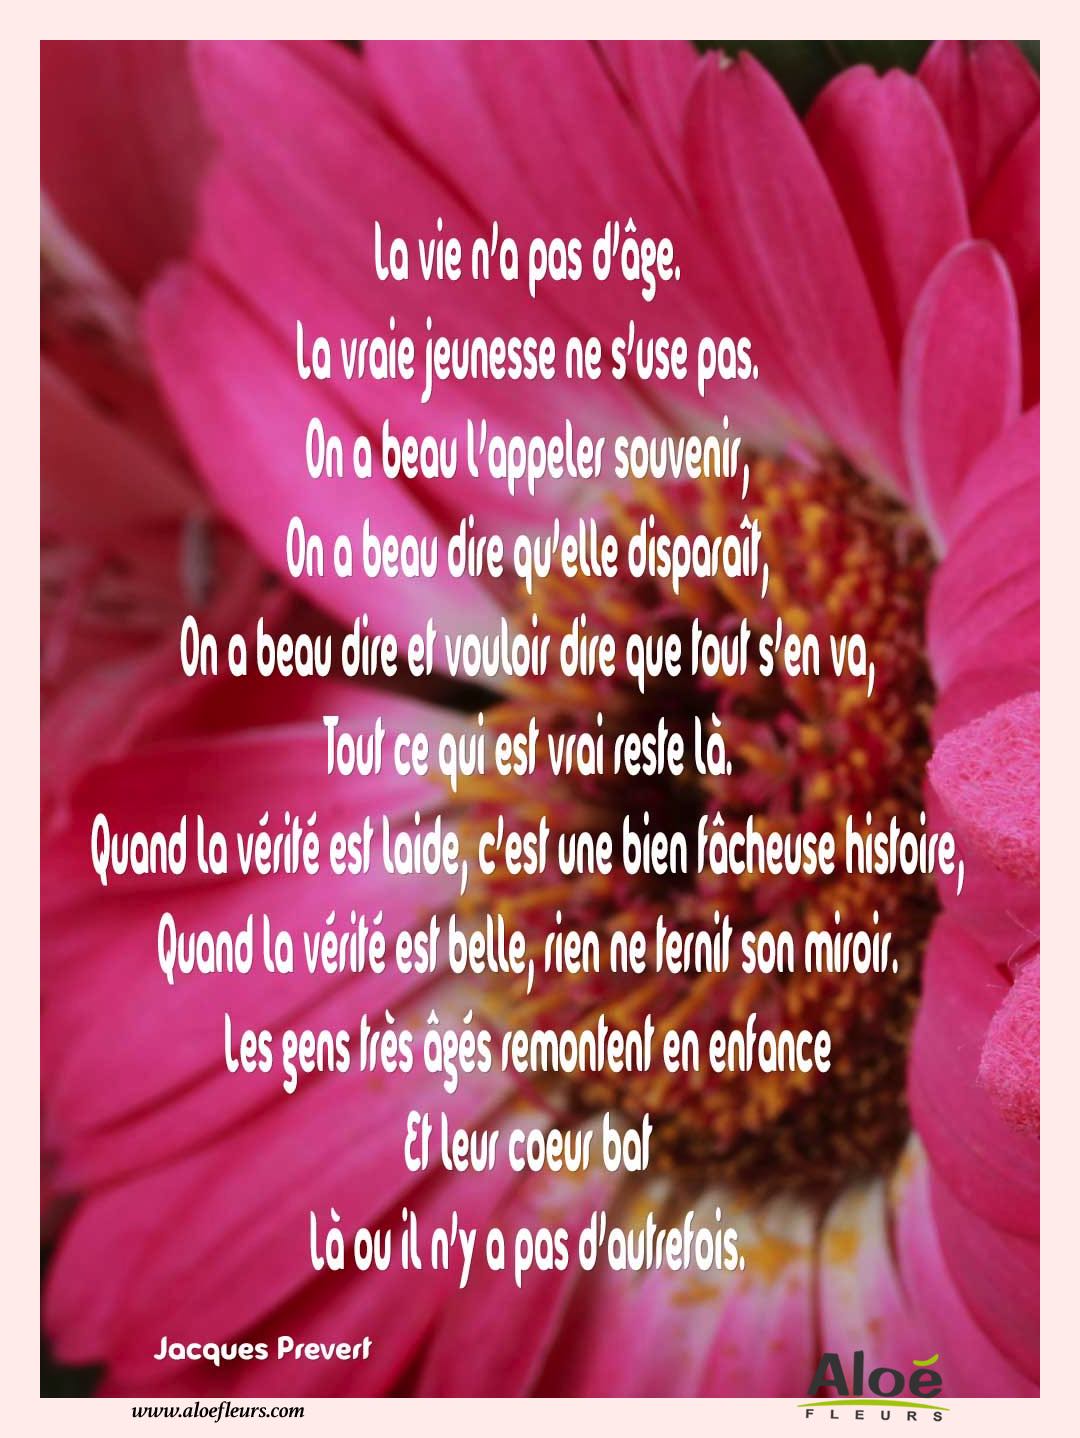 Poemes Fete Des Grands Meres 2016 Aloefleurs.com   La Vie N'a Pas D'âge